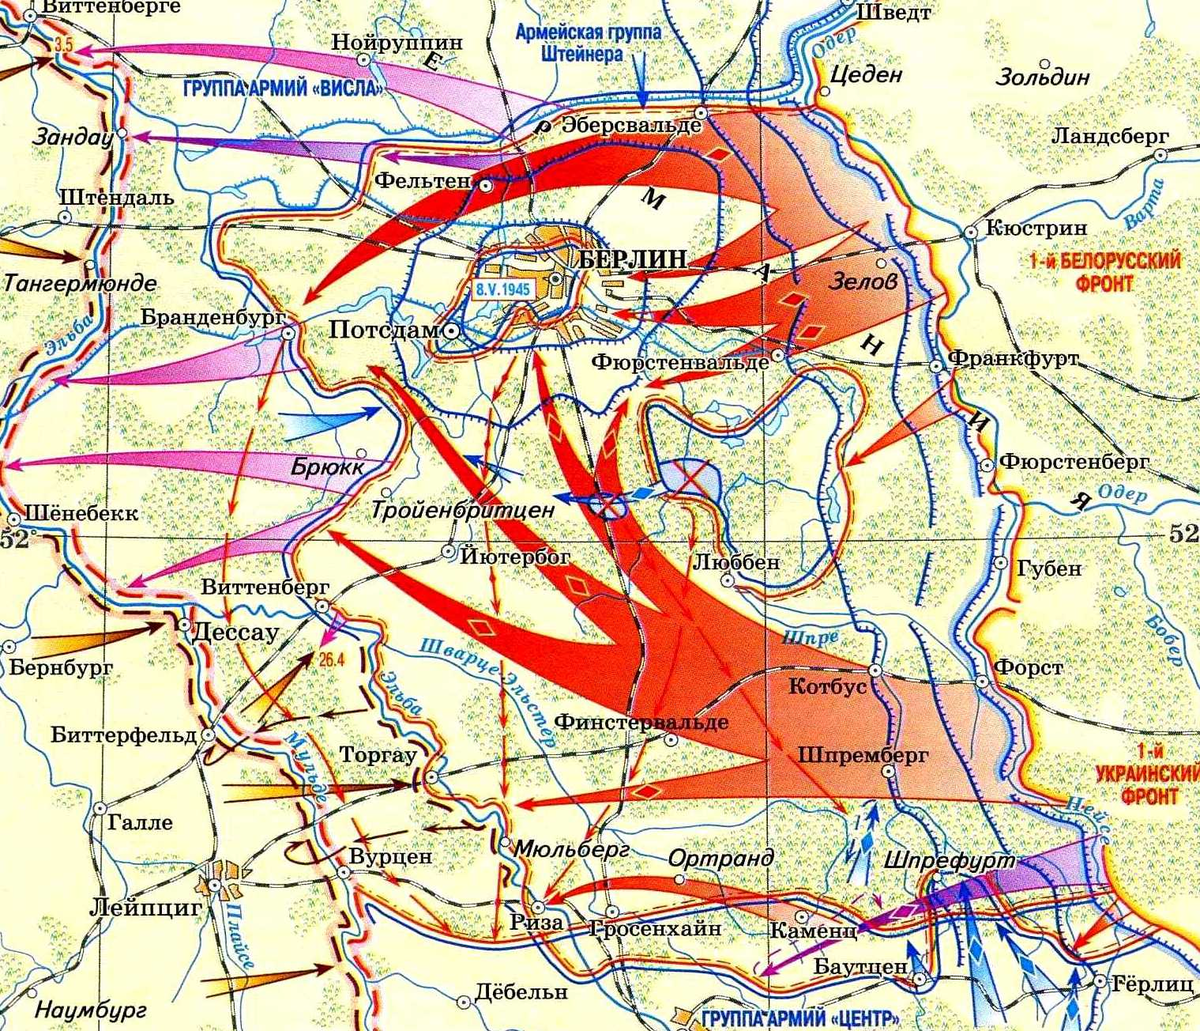 Берлинская стратегическая наступательная операция